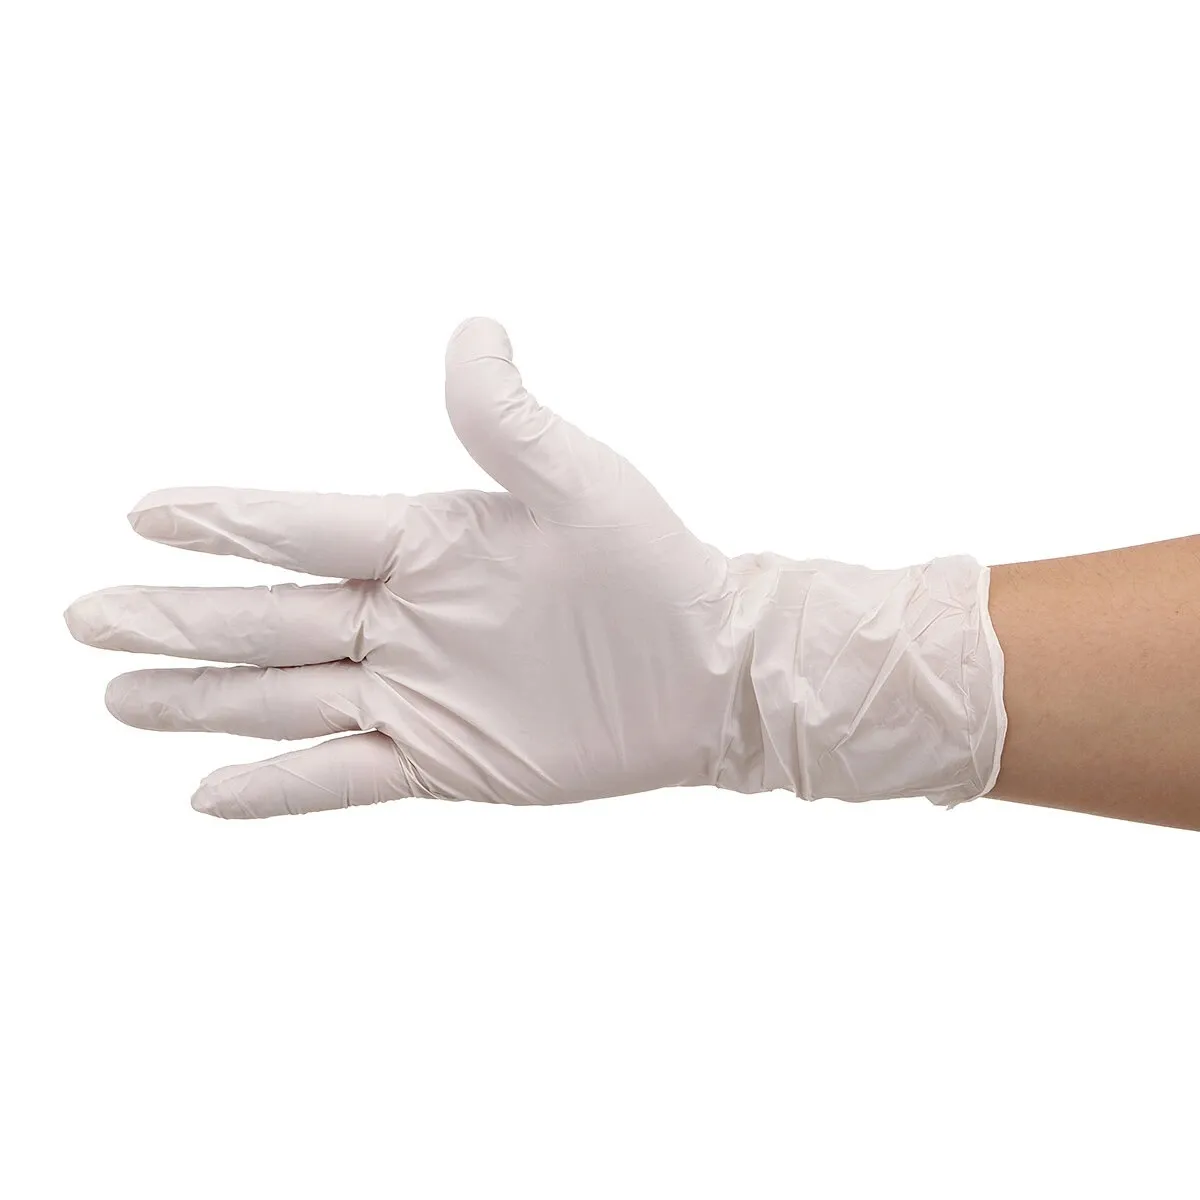 100 pièces gants de protection jetables en nitrile S/M/L sans poudre isolat huile bactéries gant Protection des mains santé personnelle